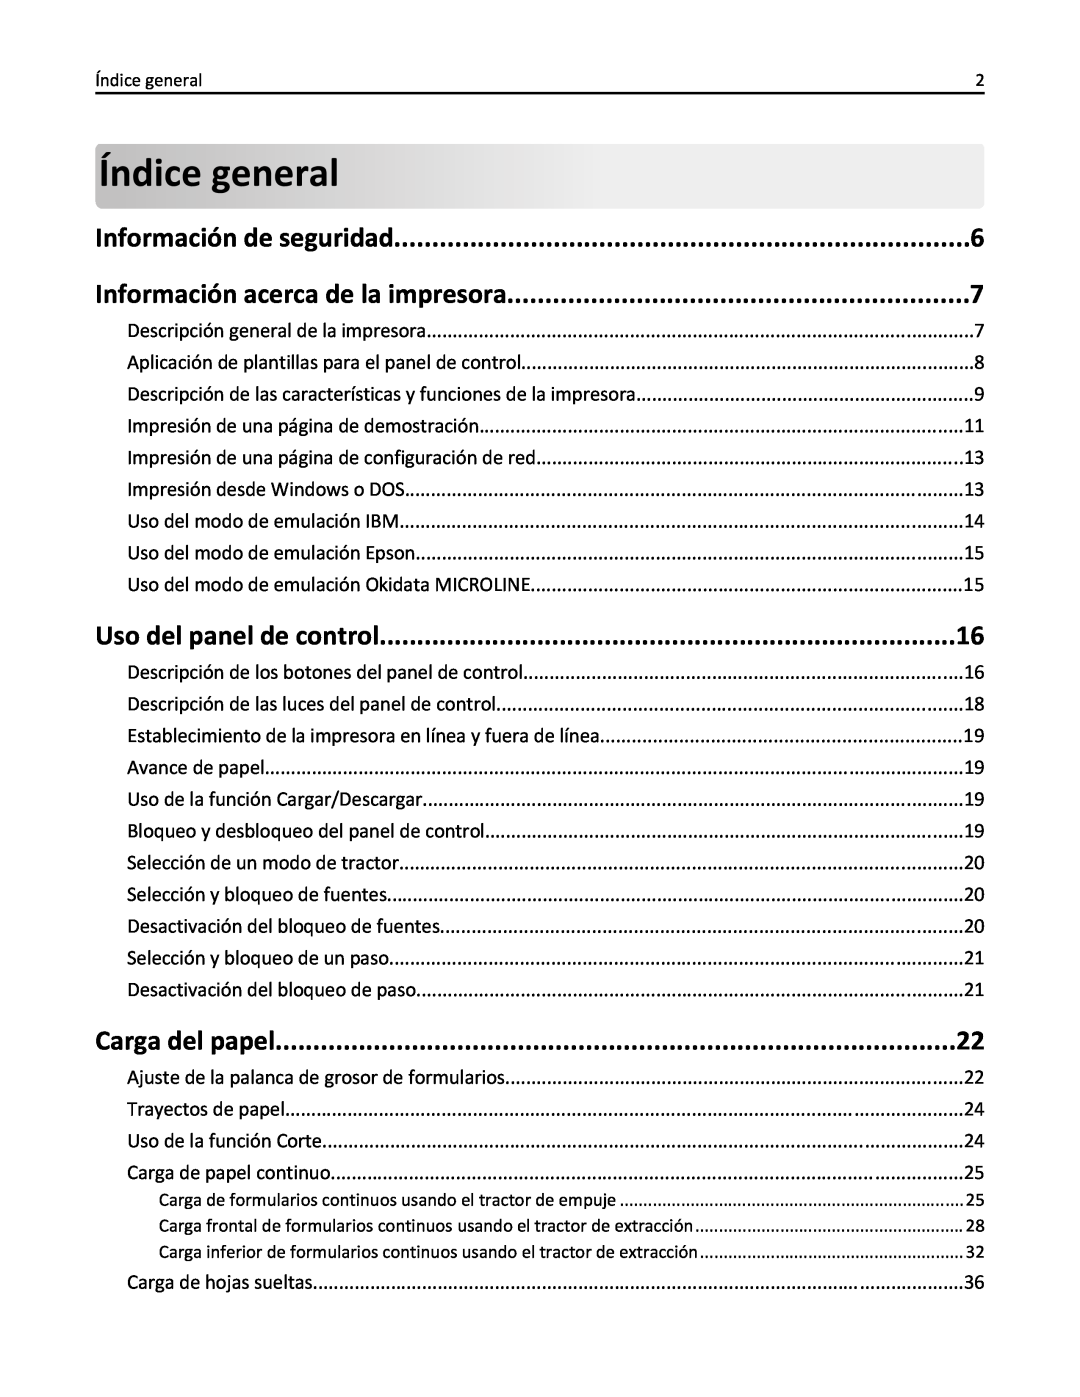 Lexmark 2500 manual Índice general, Información de seguridad, Información acerca de la impresora, Uso del panel de control 